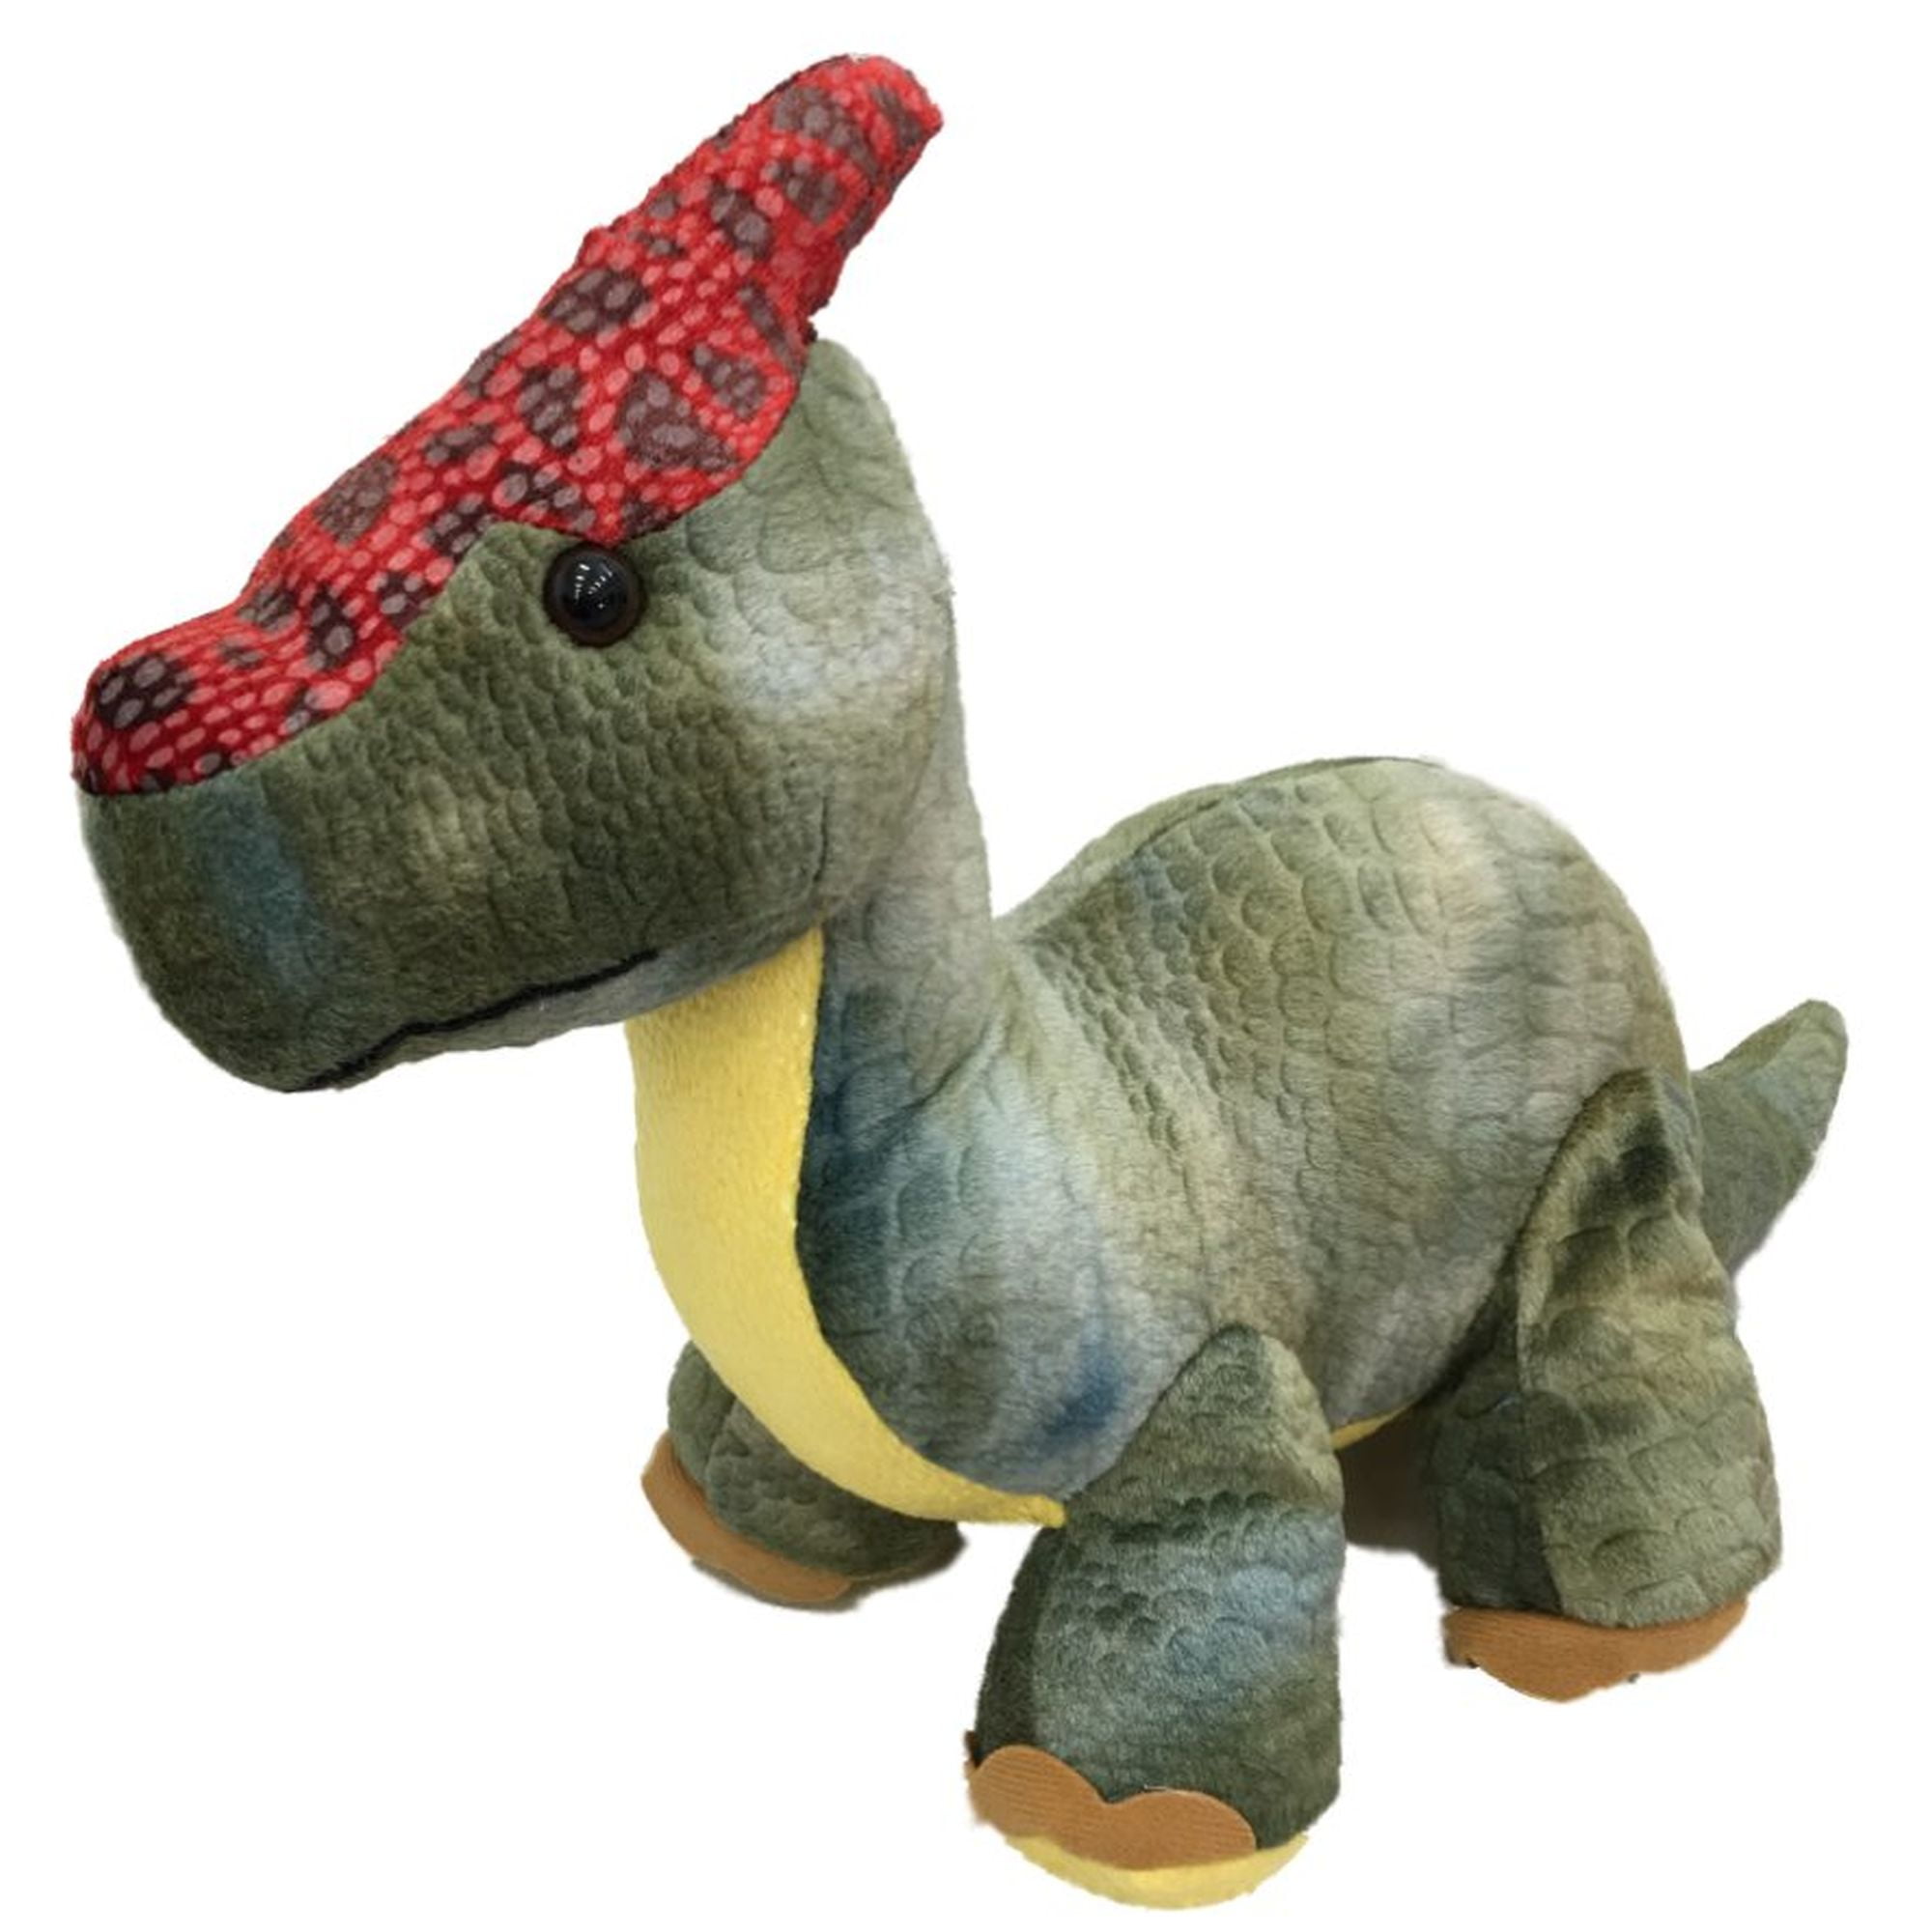 Parsaurus Dinosaur Plush Stuffed Animal 